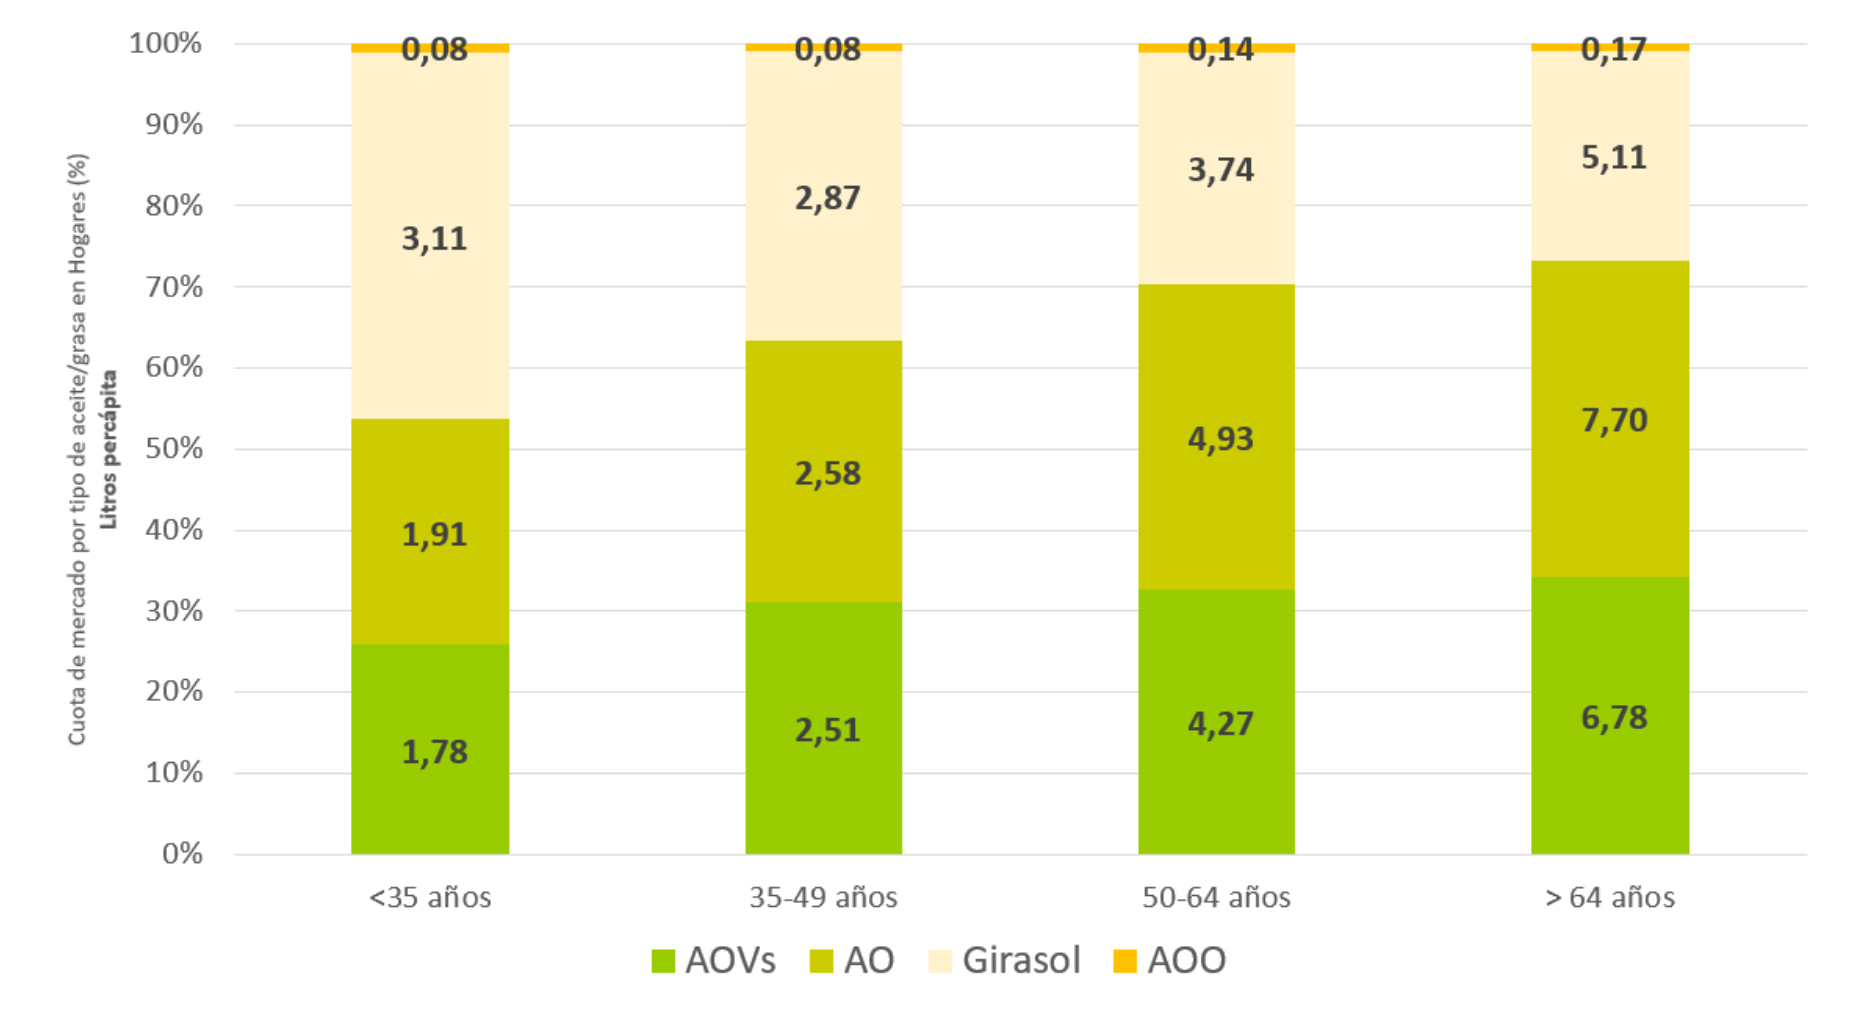 Figura 1. Consumo de aceite/grasas en los hogares espaoles en funcin de la edad. Fuente: Elaboracin propia a partir de datos del MAPA...